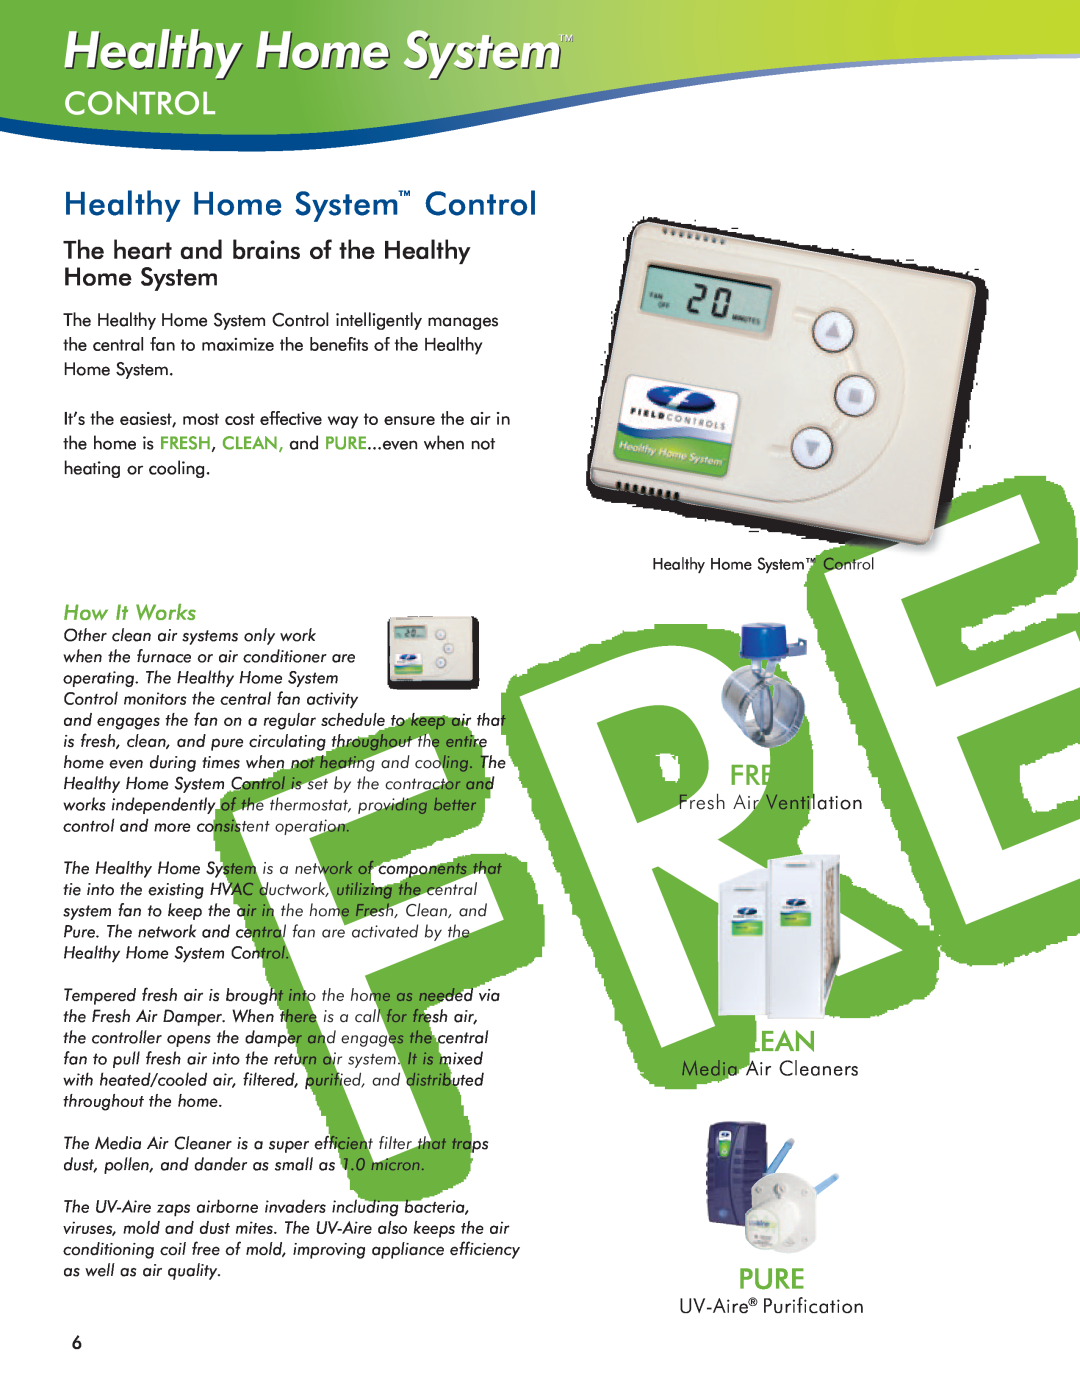 Field Controls IAQ11 Healthy Home System Control, The heart and brains of the Healthy Home System, How It Works, Fresh 